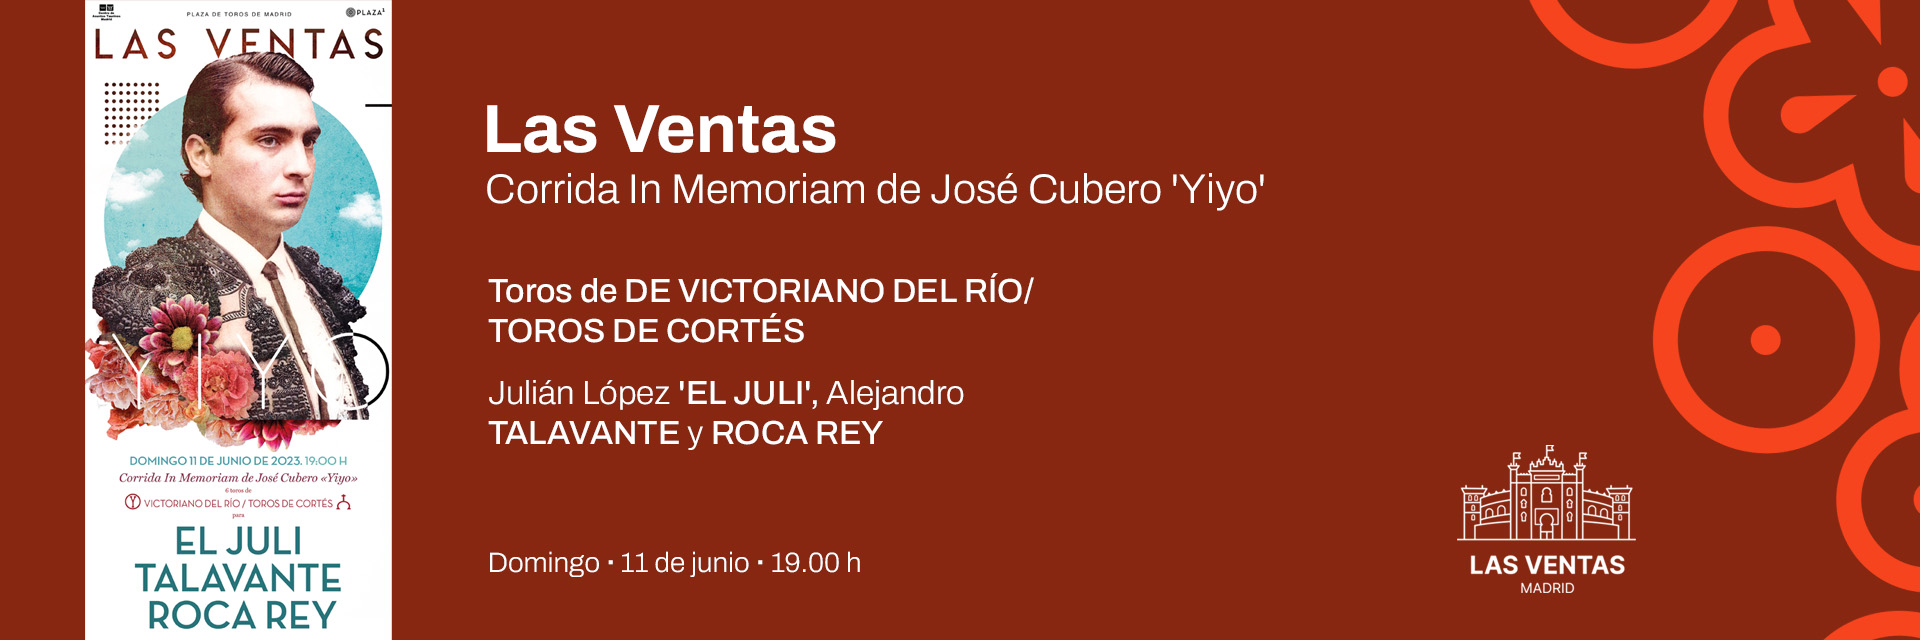 Corrida In Memoriam José Cubero “Yiyo”. Toros de Victoriano del Río para El Juli, Alejandro Talavante y Roca Rey (11/06/